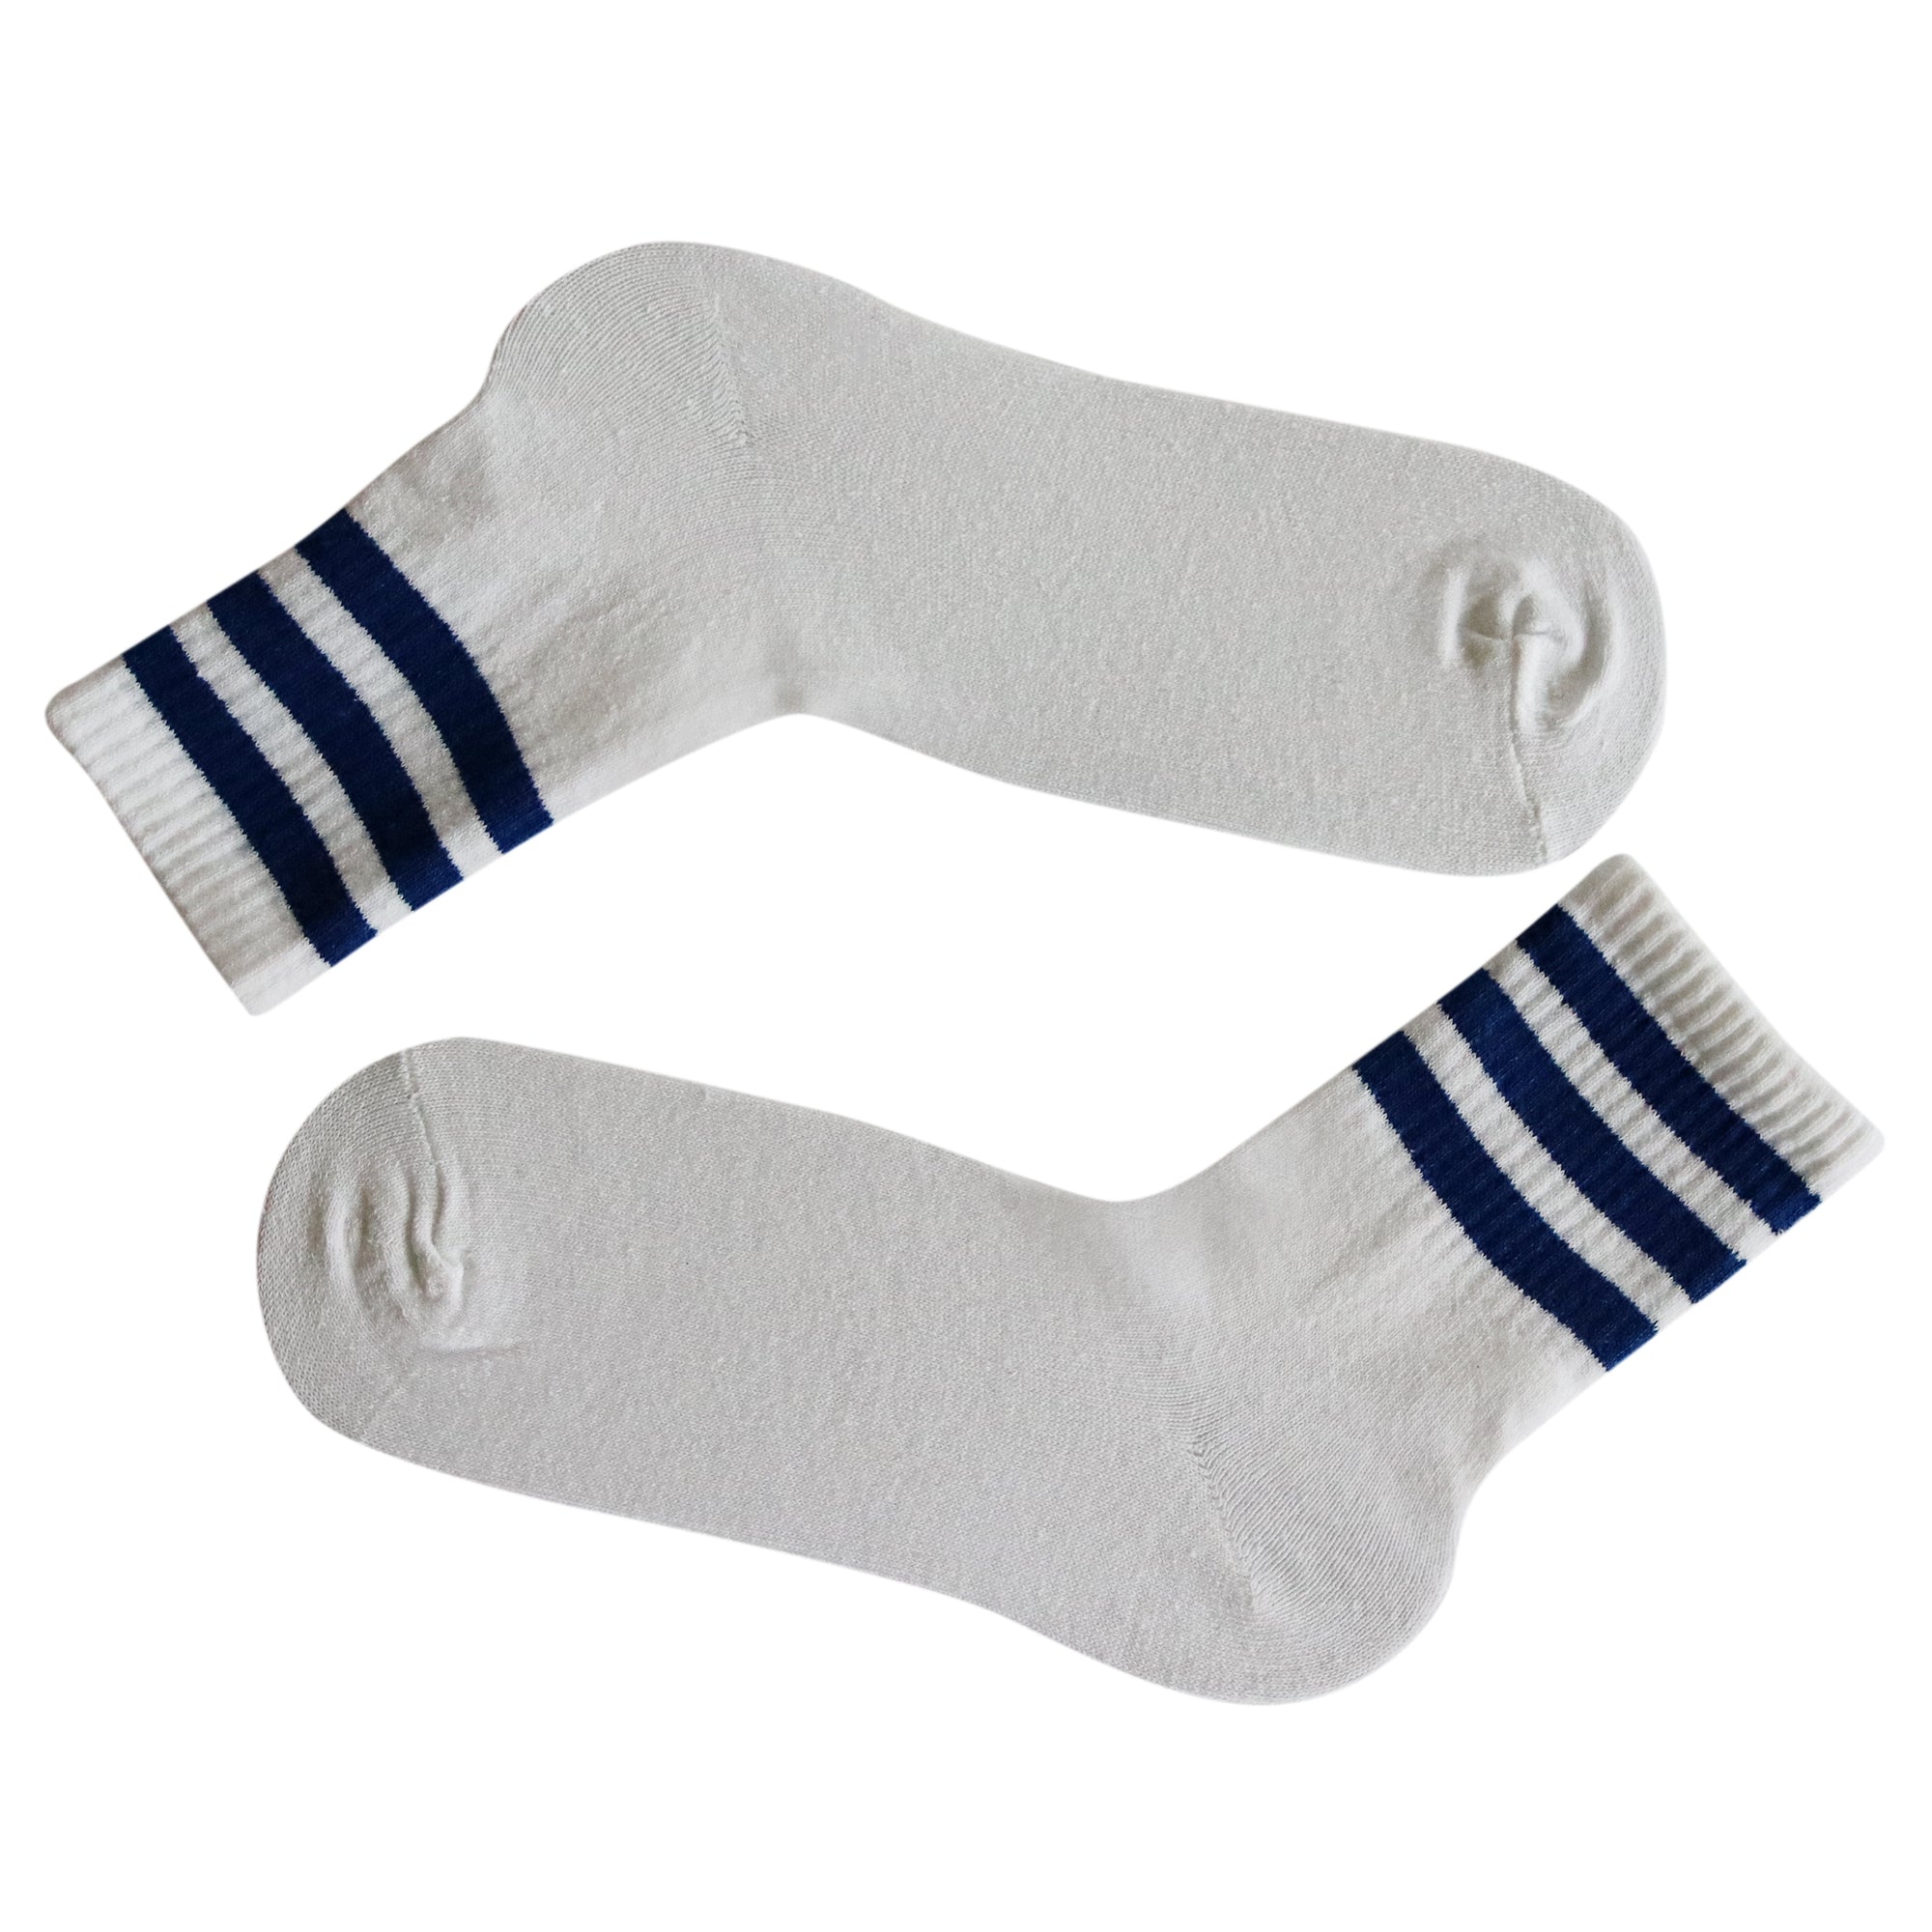 Louluu Women 3Stripe White-Dark Blue Colour Tennis Socks